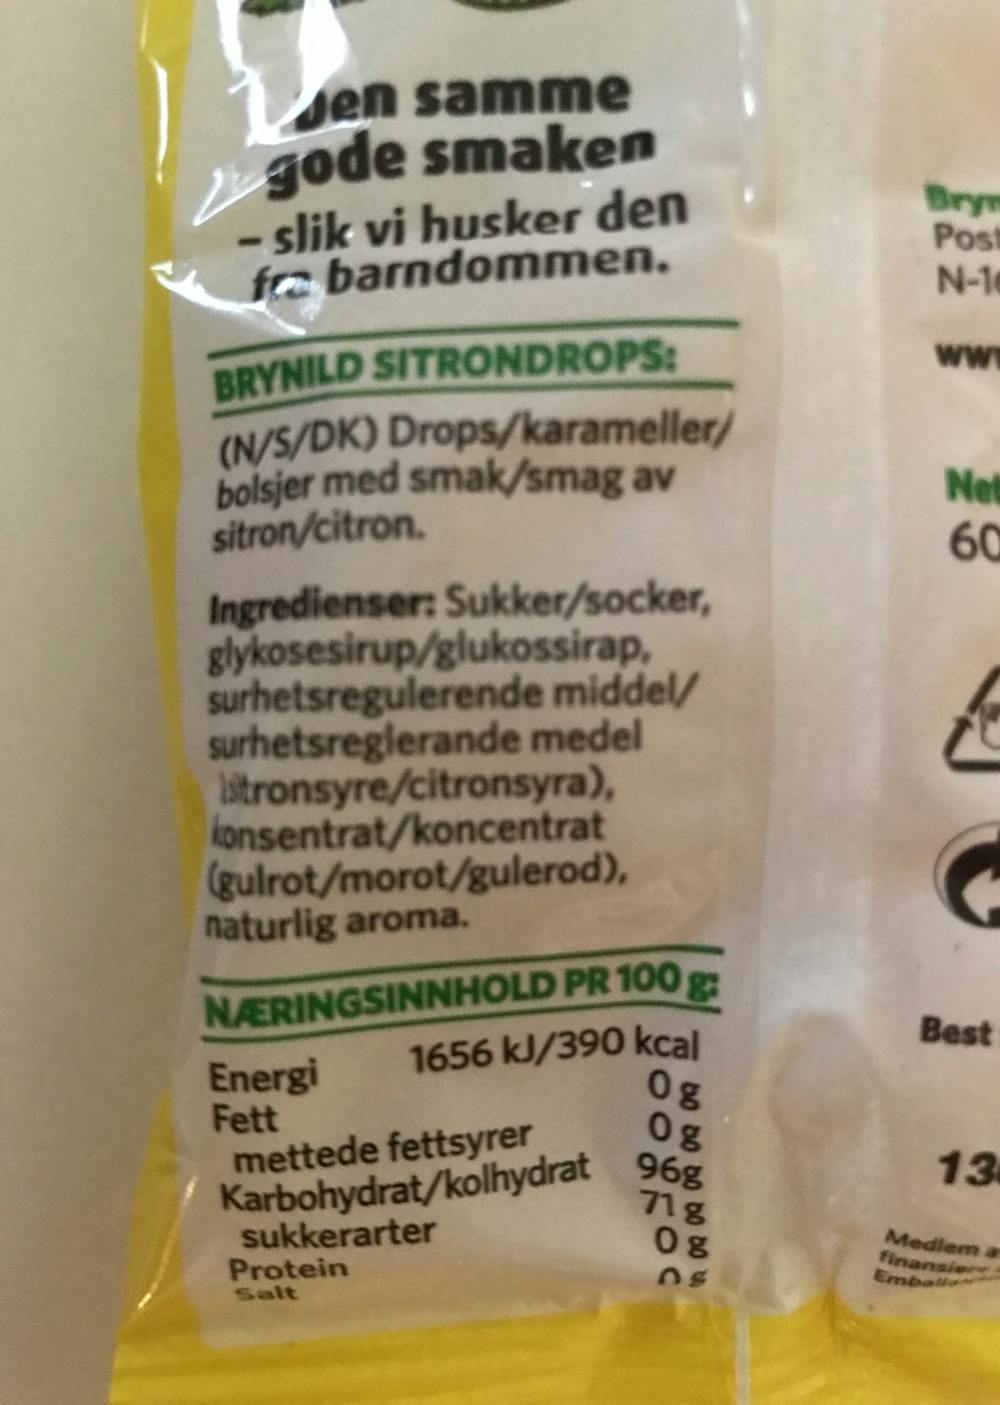 Ingrediensliste - Sitrondrops, Brynild